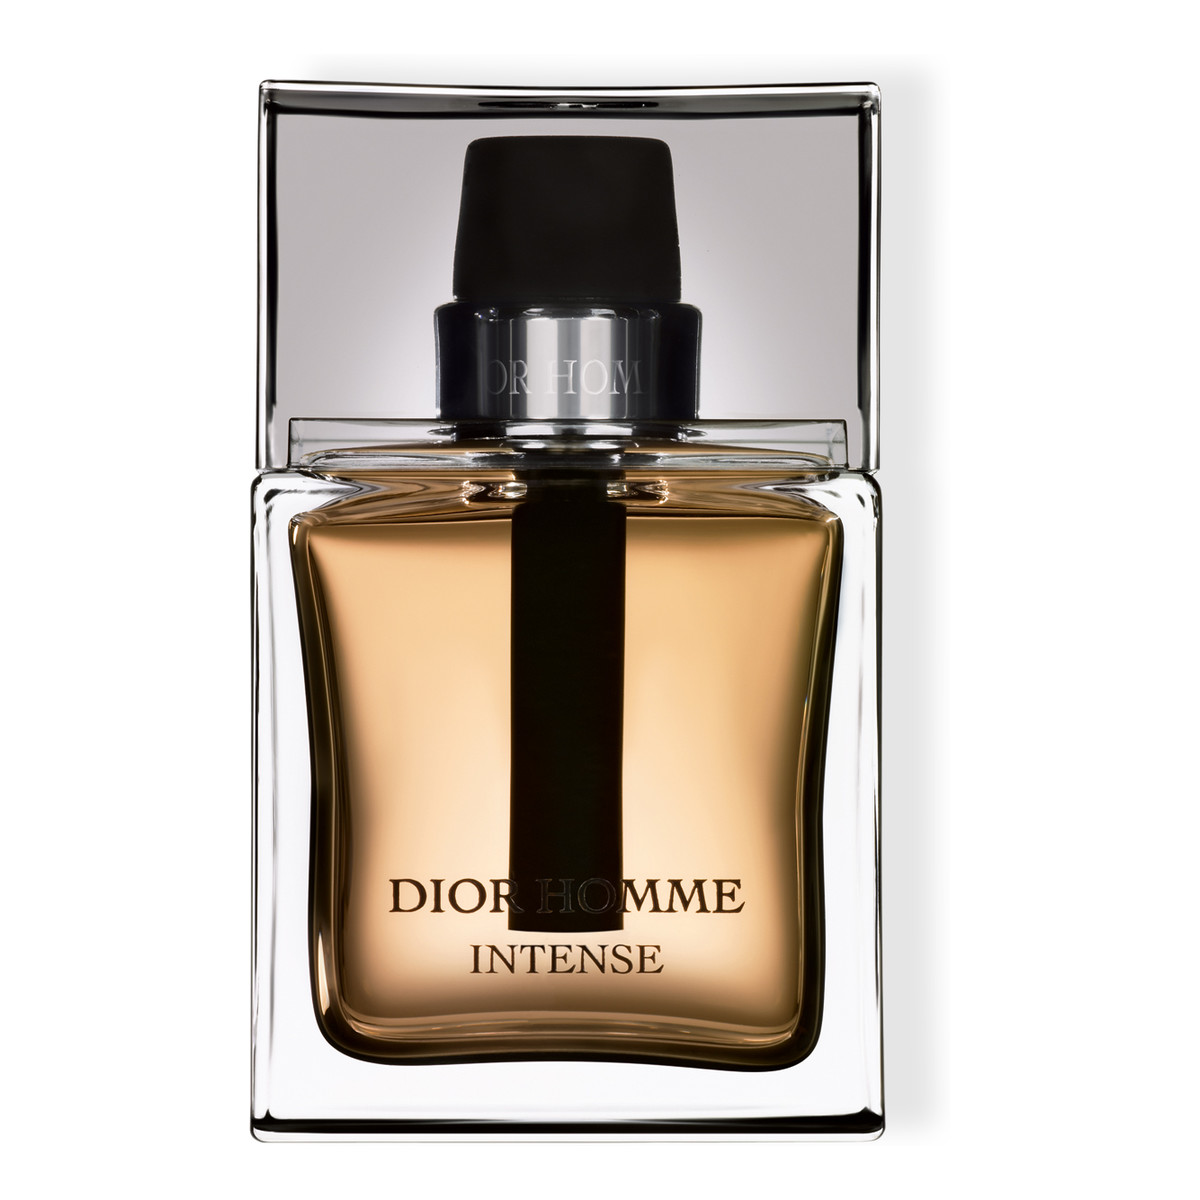 Dior Homme Intense woda perfumowana dla mężczyzn 50ml